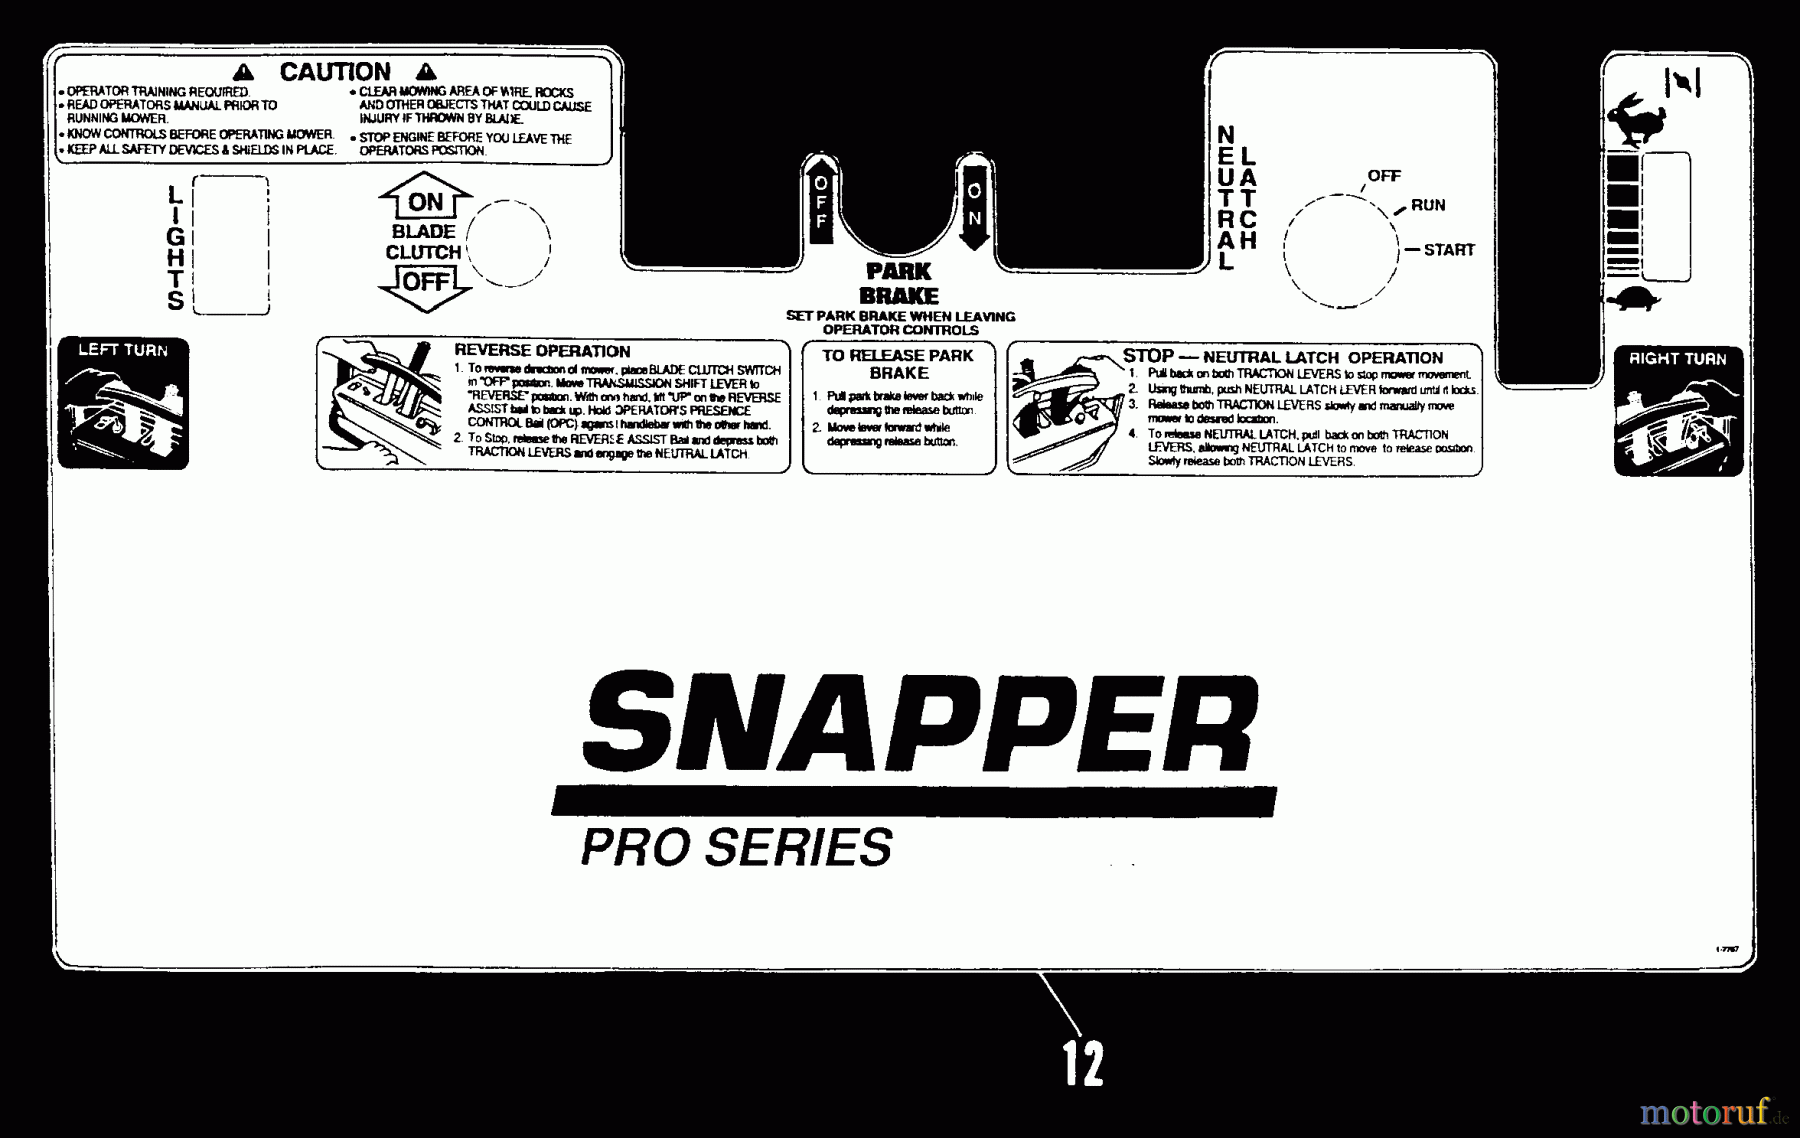  Snapper Rasenmäher für Großflächen PPU140KO - Snapper Wide-Area Walk-Behind Mower, 14 HP, Mid-Size Gear Drive, Series 0 Decal Kit (Part 2)